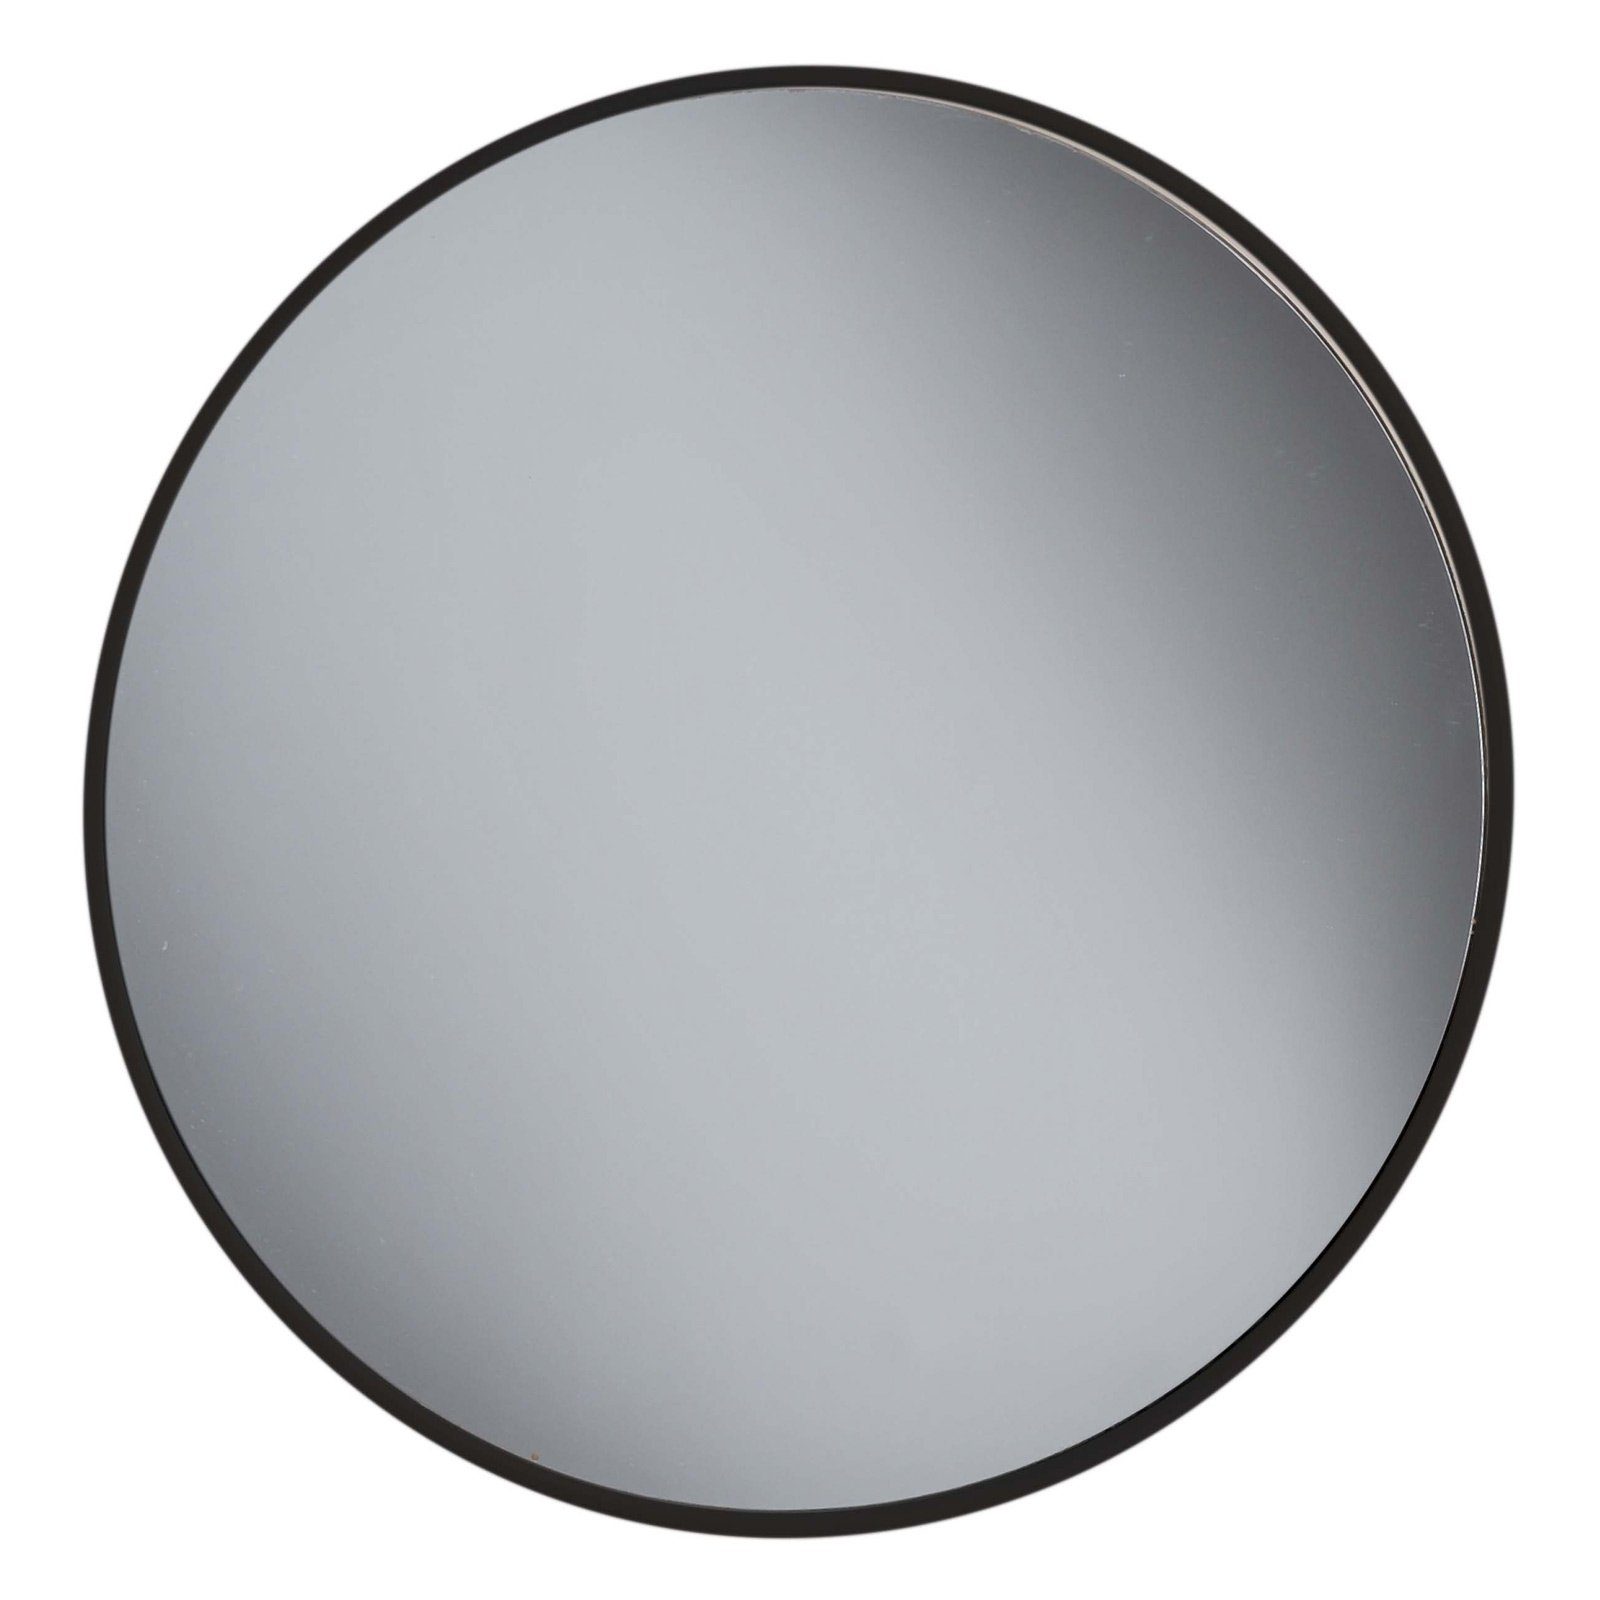 Kosmetex Spiegel »Friseur-Spiegel, Ø 24.5 cm Salonspiegel, schwarz«